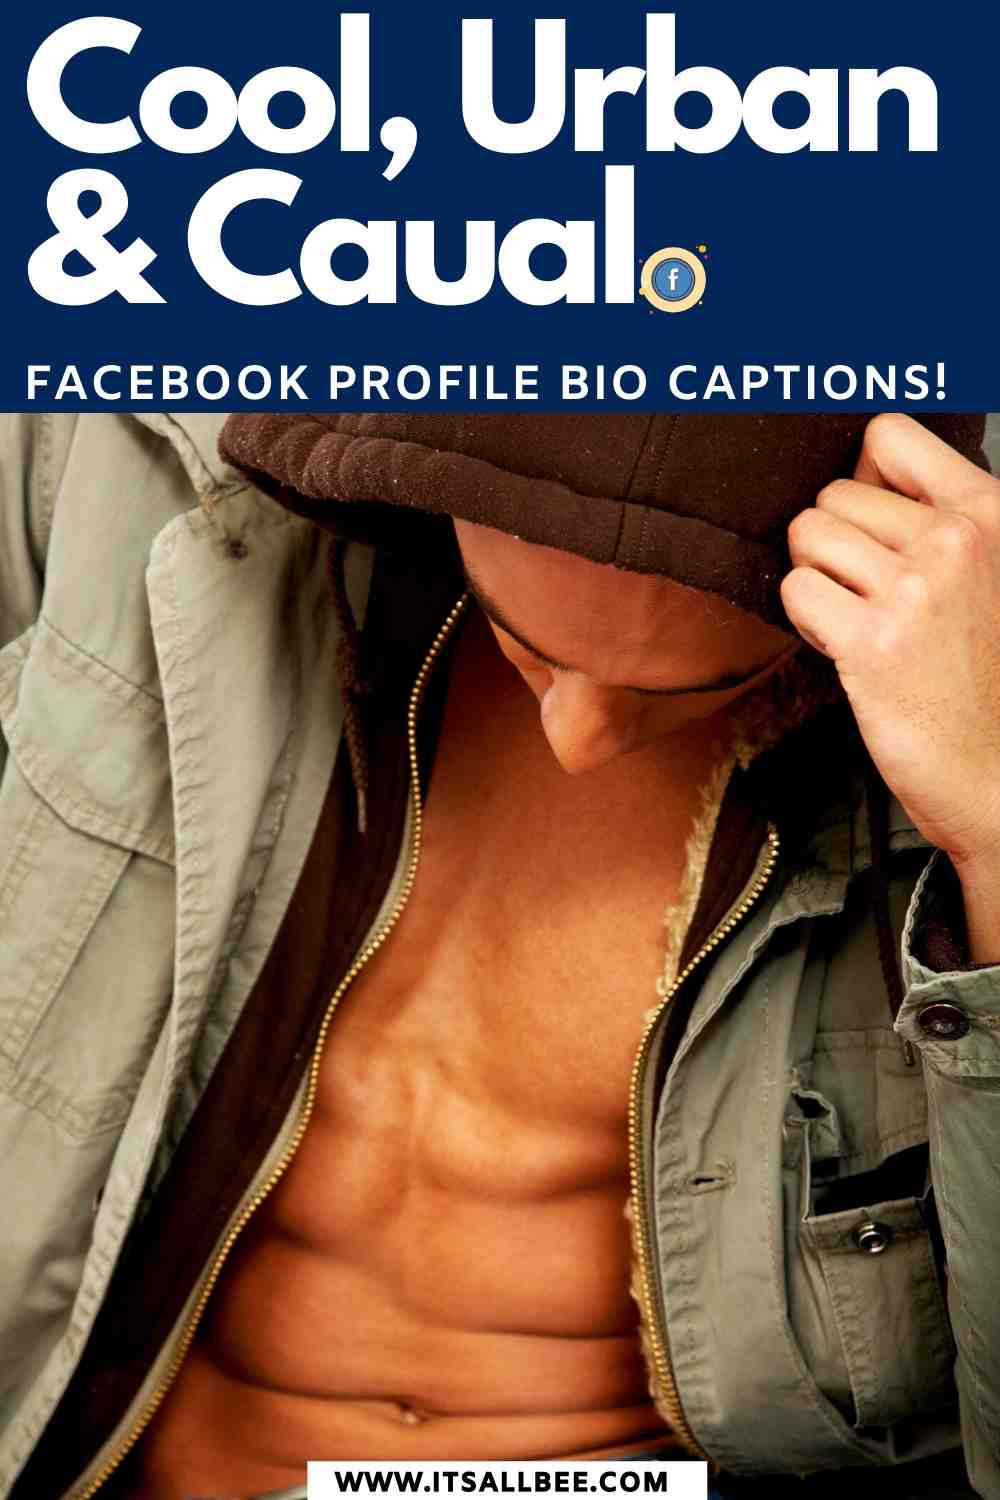 Bio Facebook examples - Facebook funny - bio for Facebook profile - bio Facebook ideas